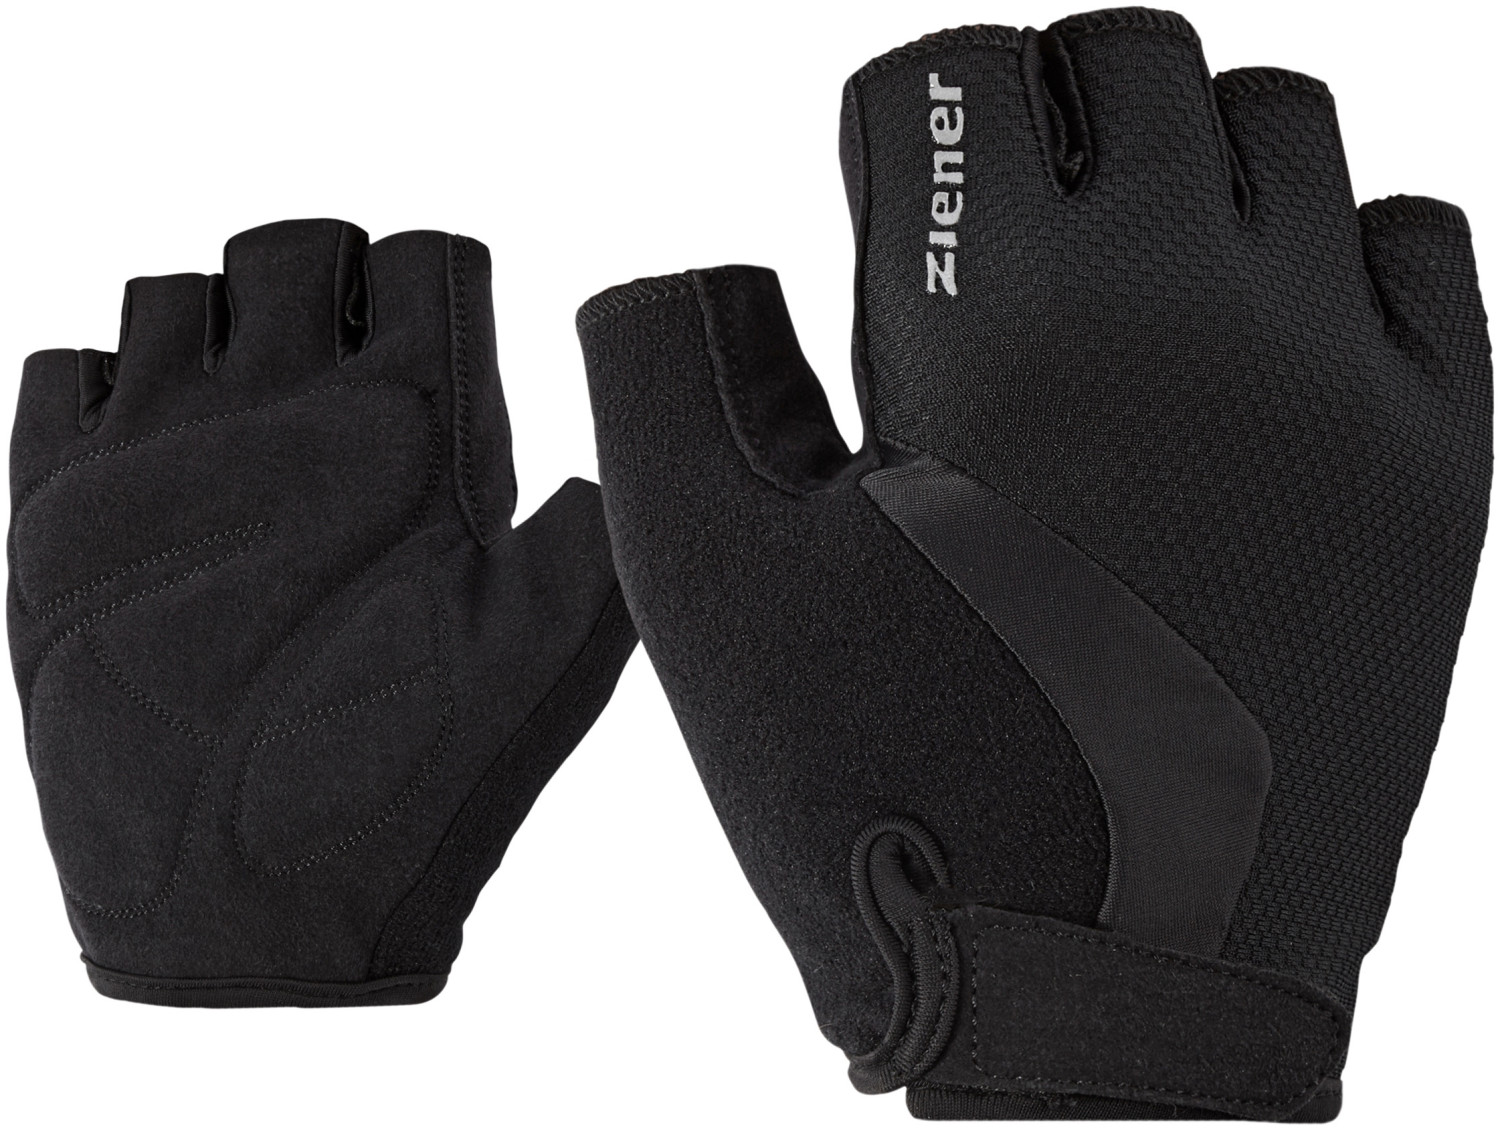 Buy Ziener CRIDO bike glove black from £10.64 (Today) – Best Deals on ...